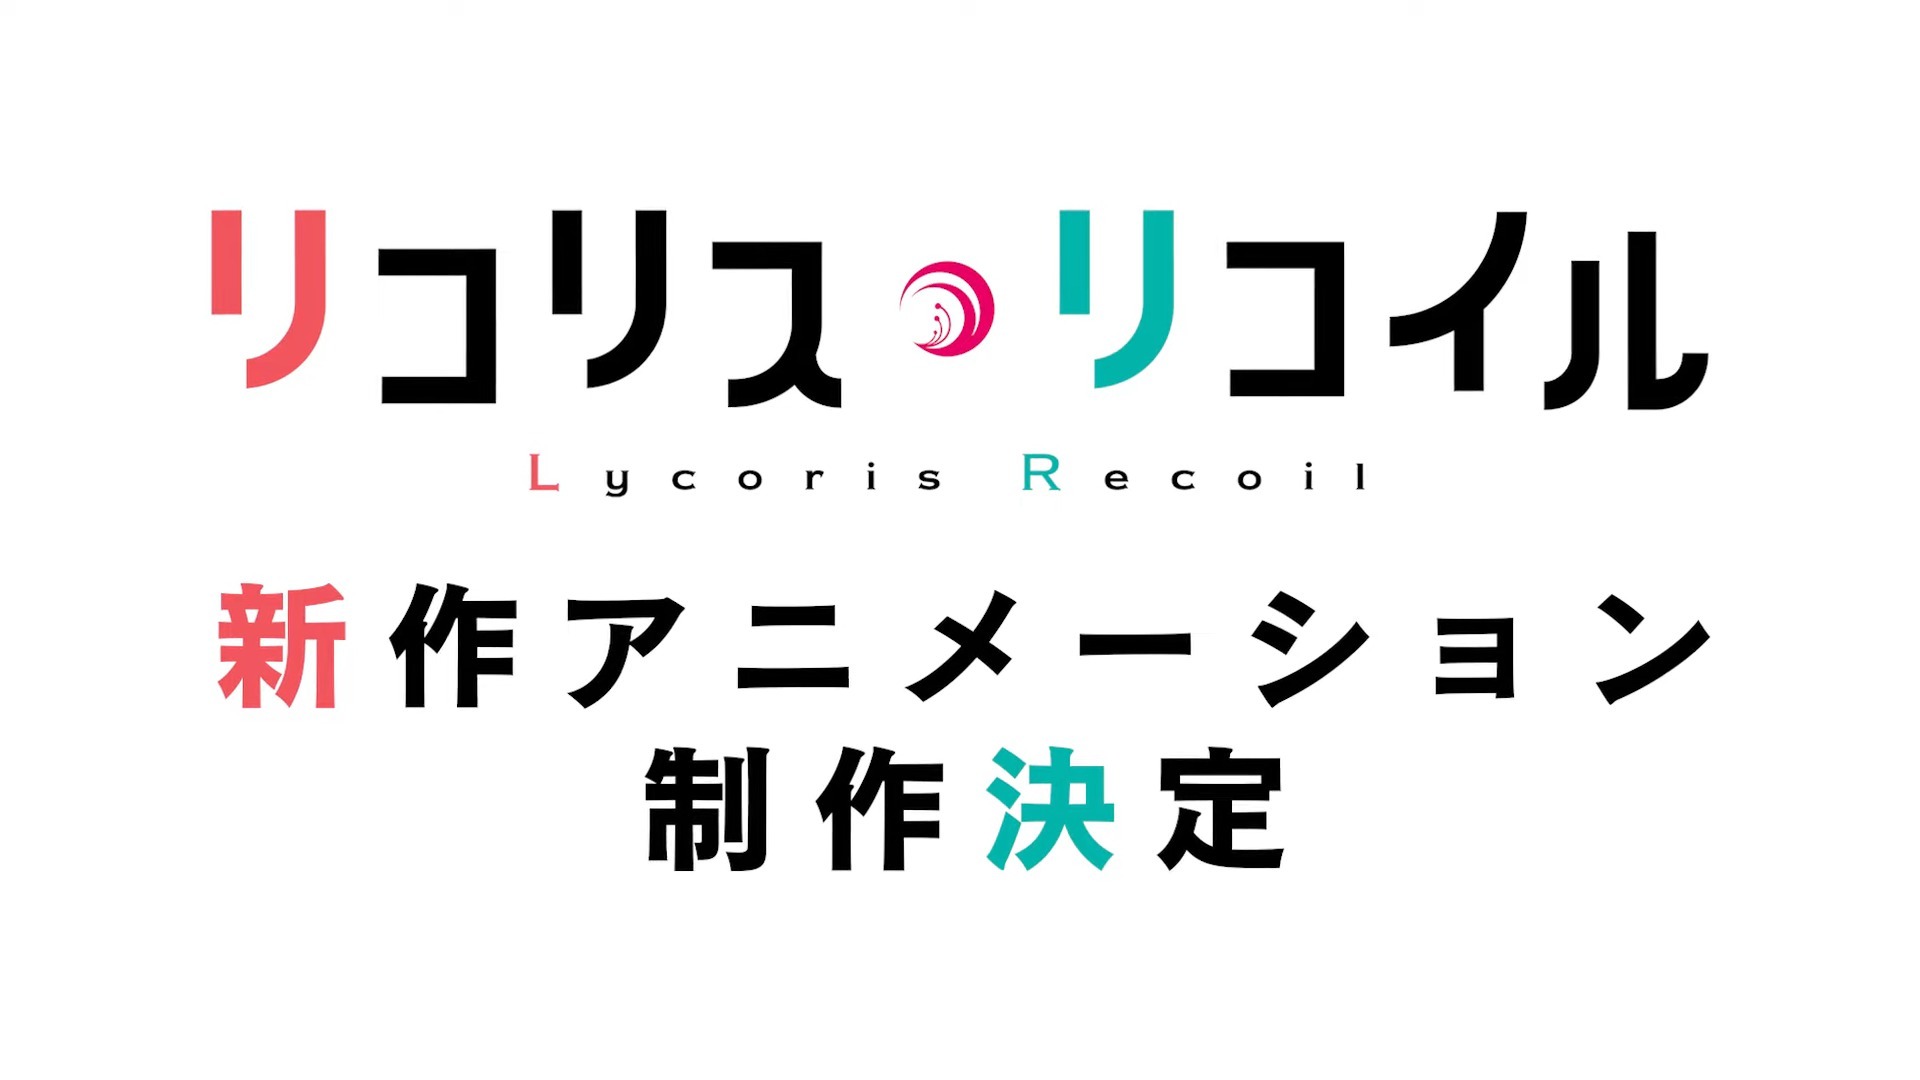 《Lycoris Recoil 莉可丽丝》宣布推出新作动画插图